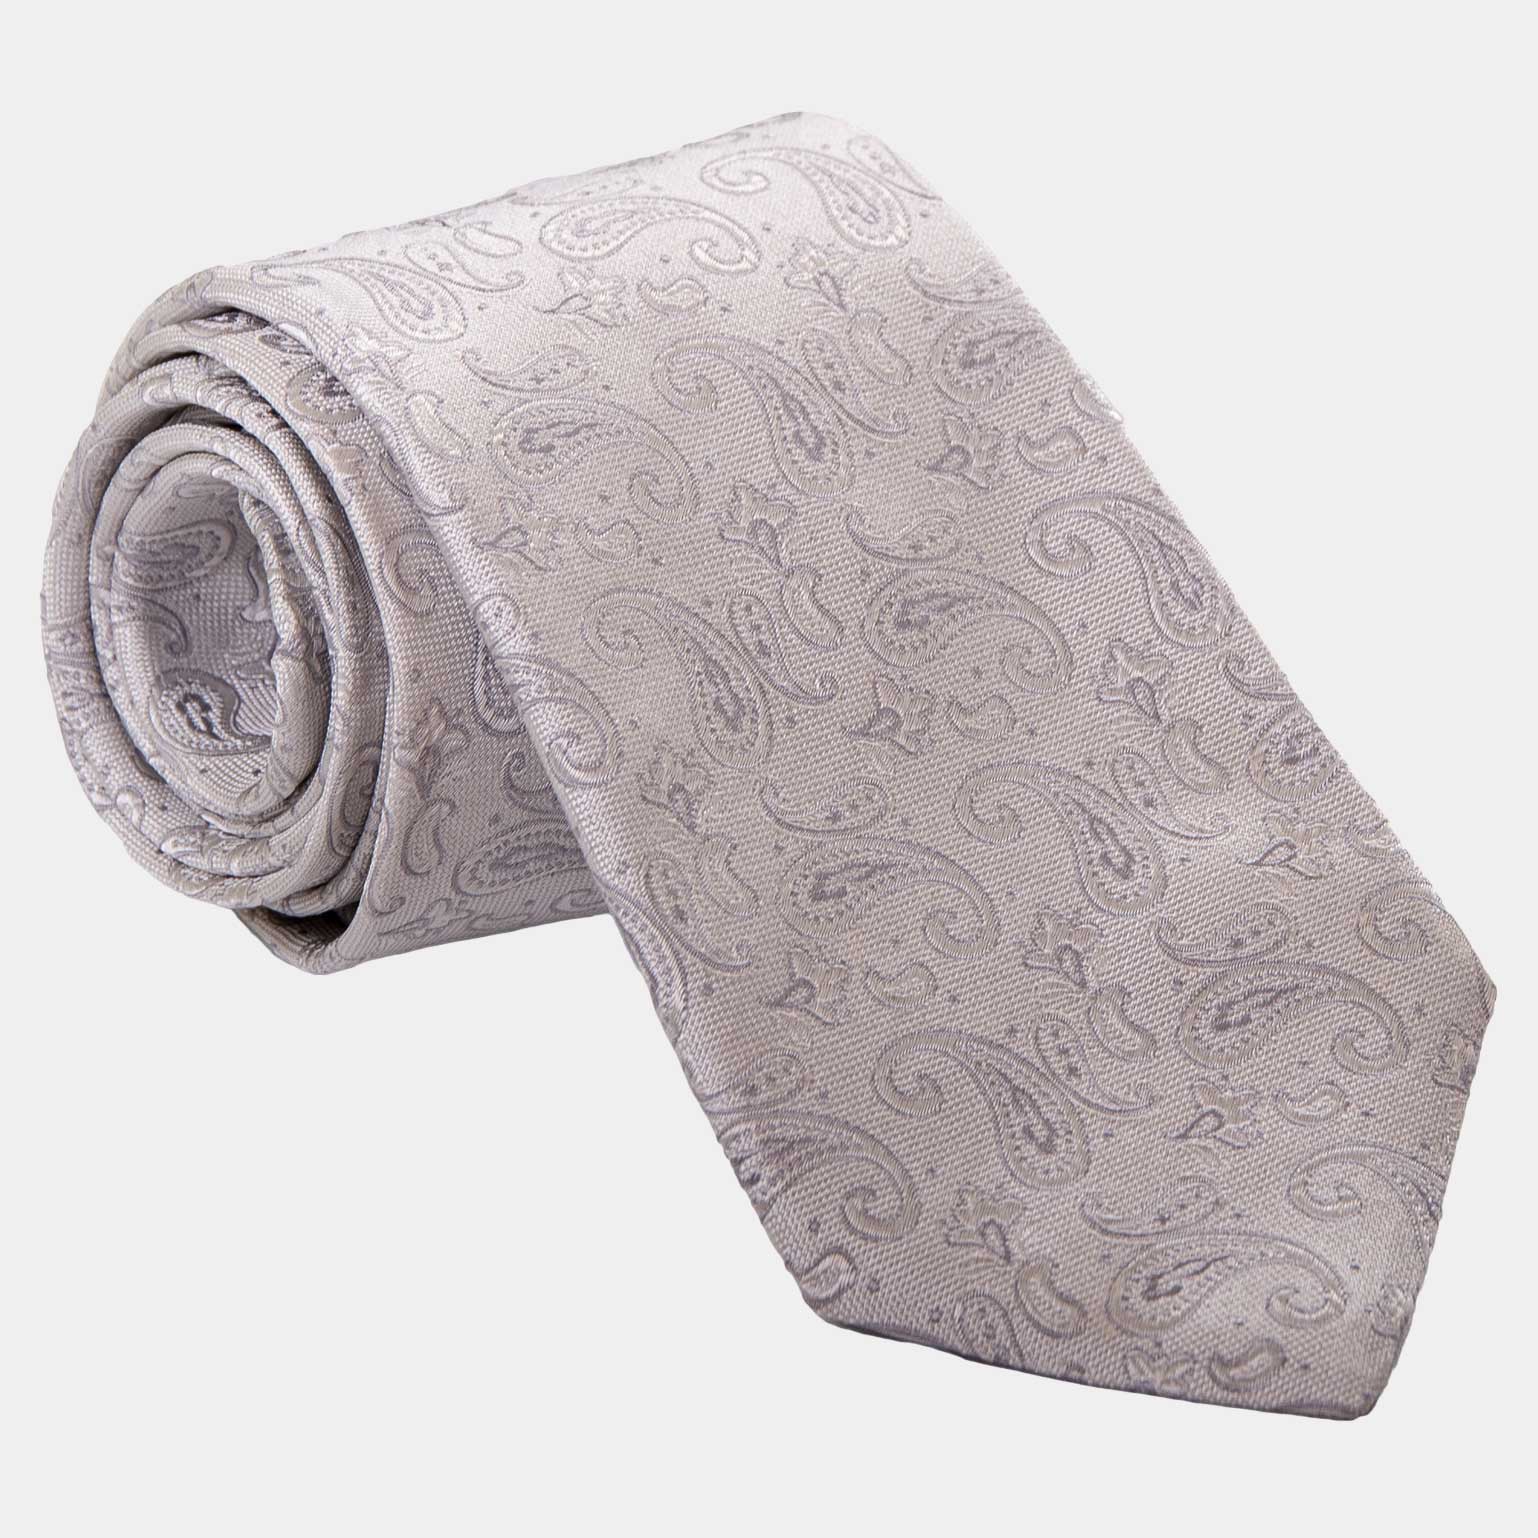 Silver Silk Paisley Tie - Handmade in Como Italy